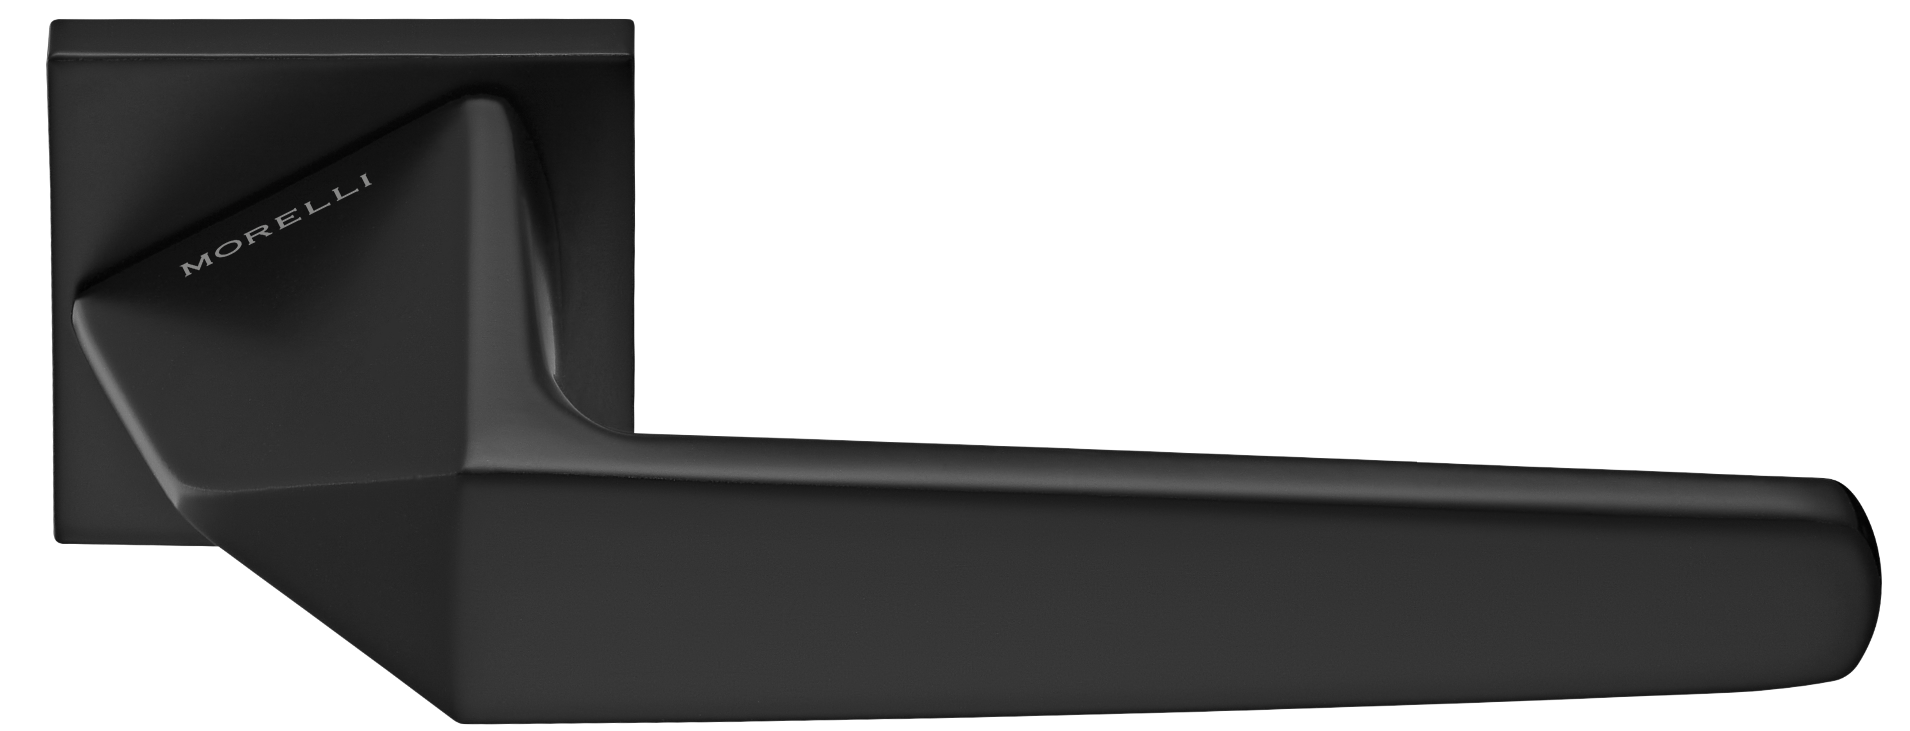 SOUK ручка дверная на квадратной розетке 6 мм, MH-55-S6 BL, цвет - черный фото купить Липецк